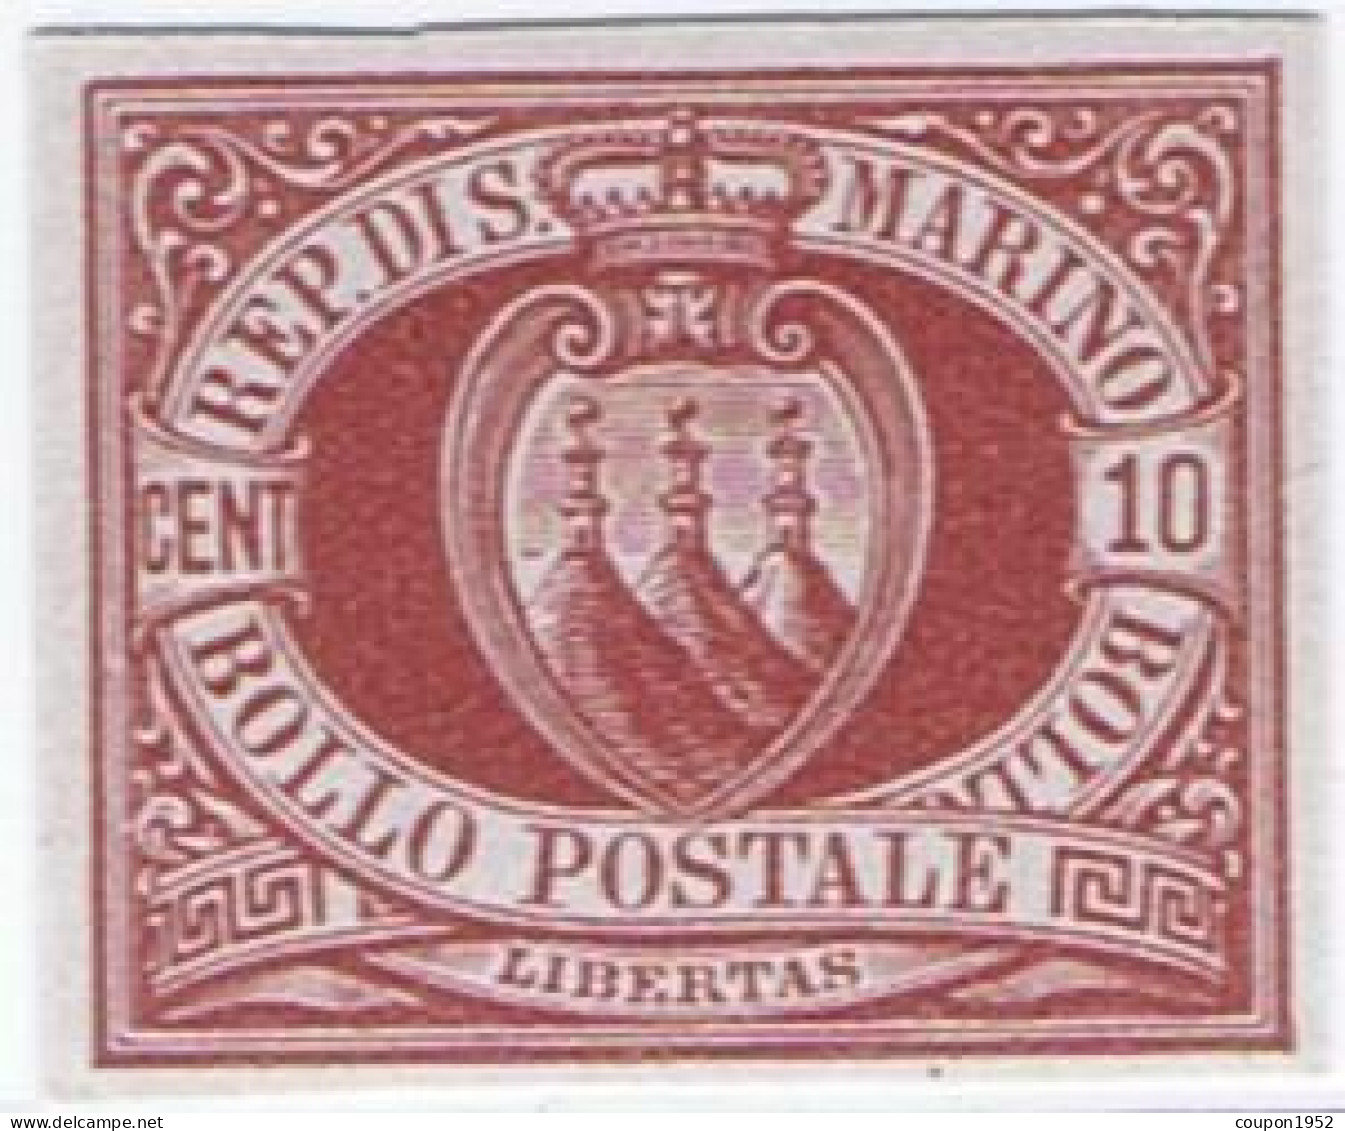 San Marino S. Marino (sm12). Stemmi. Prova Di Macchina Su Carta Grigia Del 10c Rosso Bruno Del 1899, Non Dentellata, Ott - Neufs